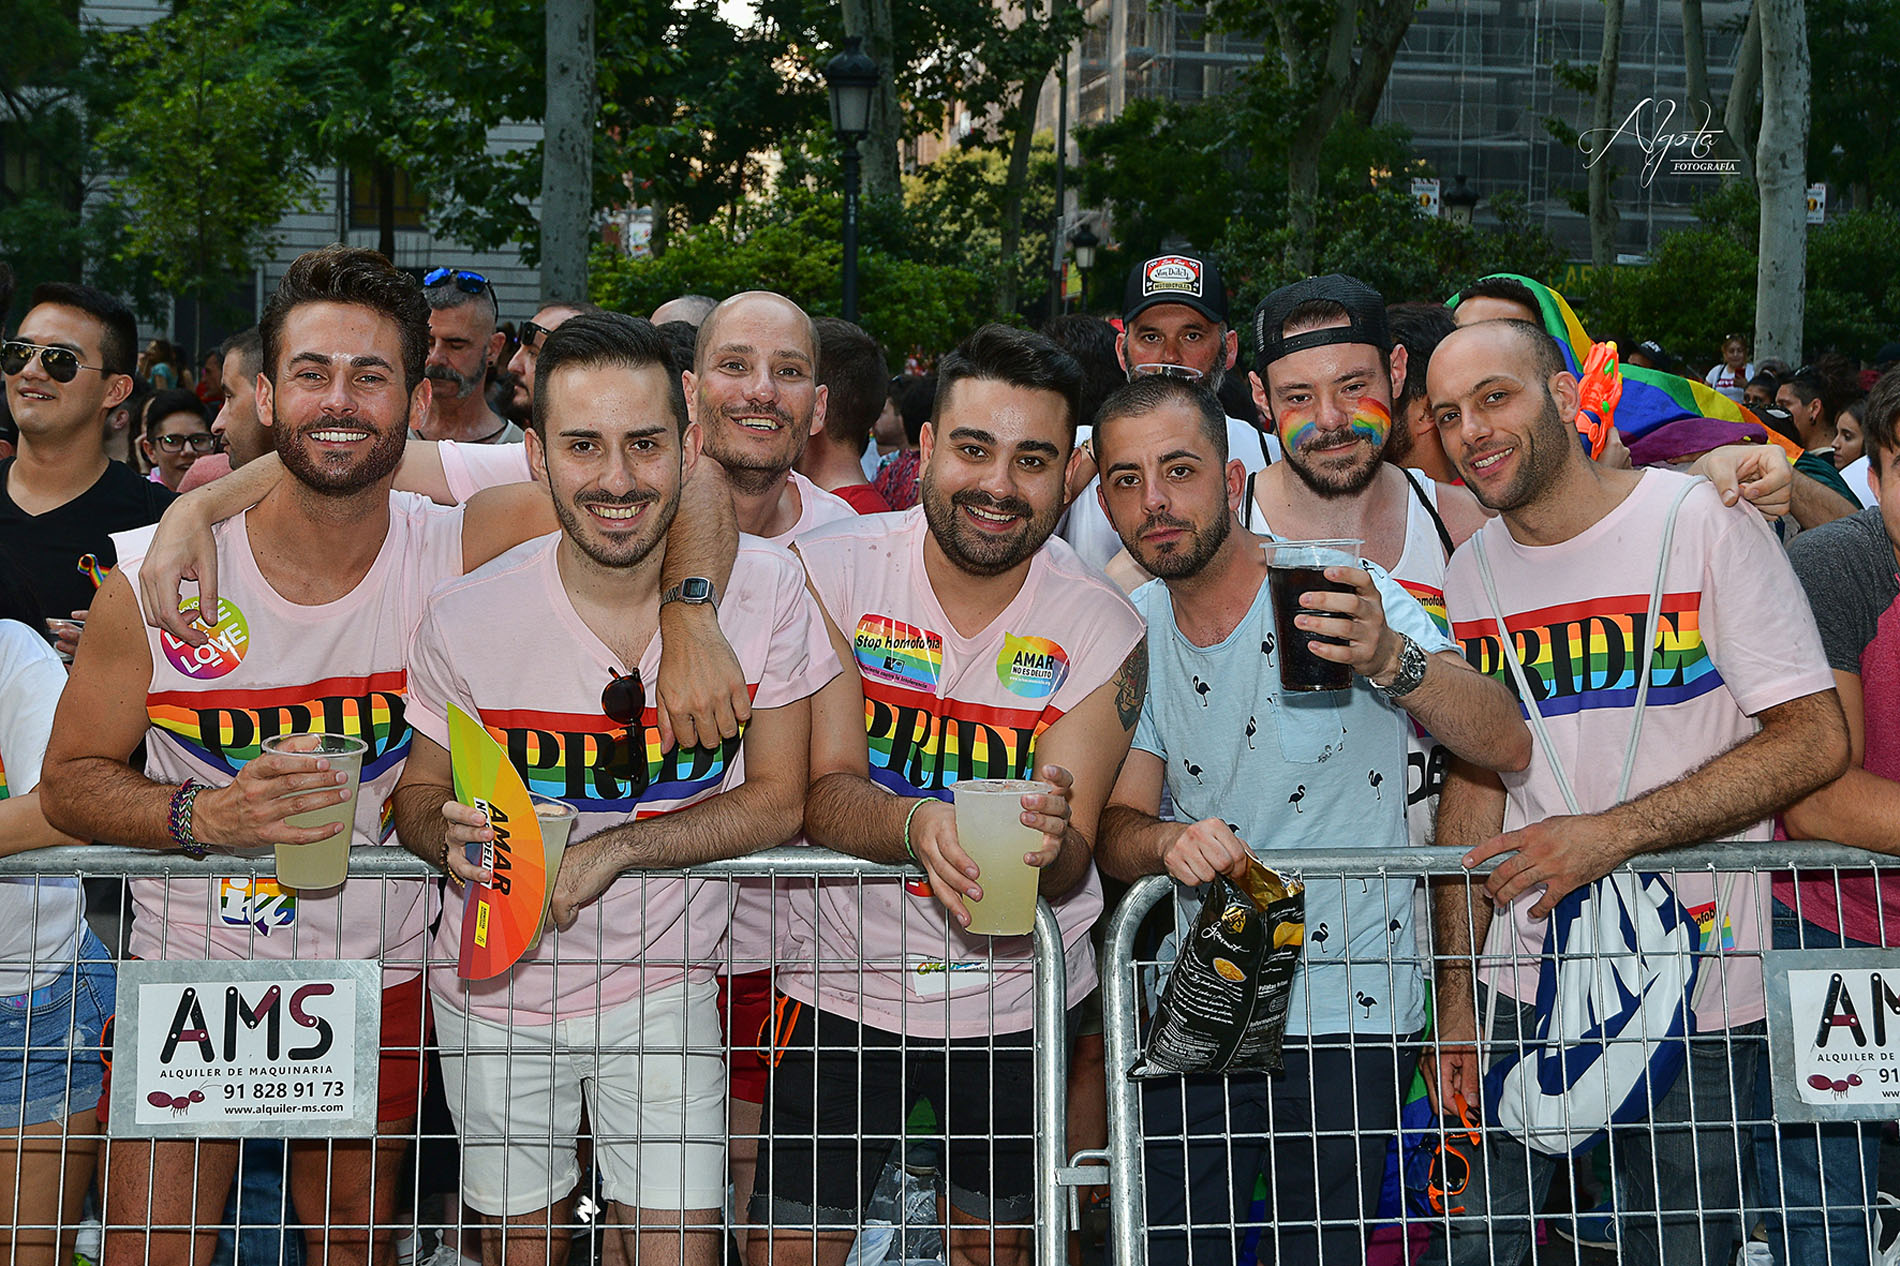 Las Fotos Del Colorido Desfile Del Orgullo Gay En Madrid Hechas Por Un Castellano Manchego Enclm